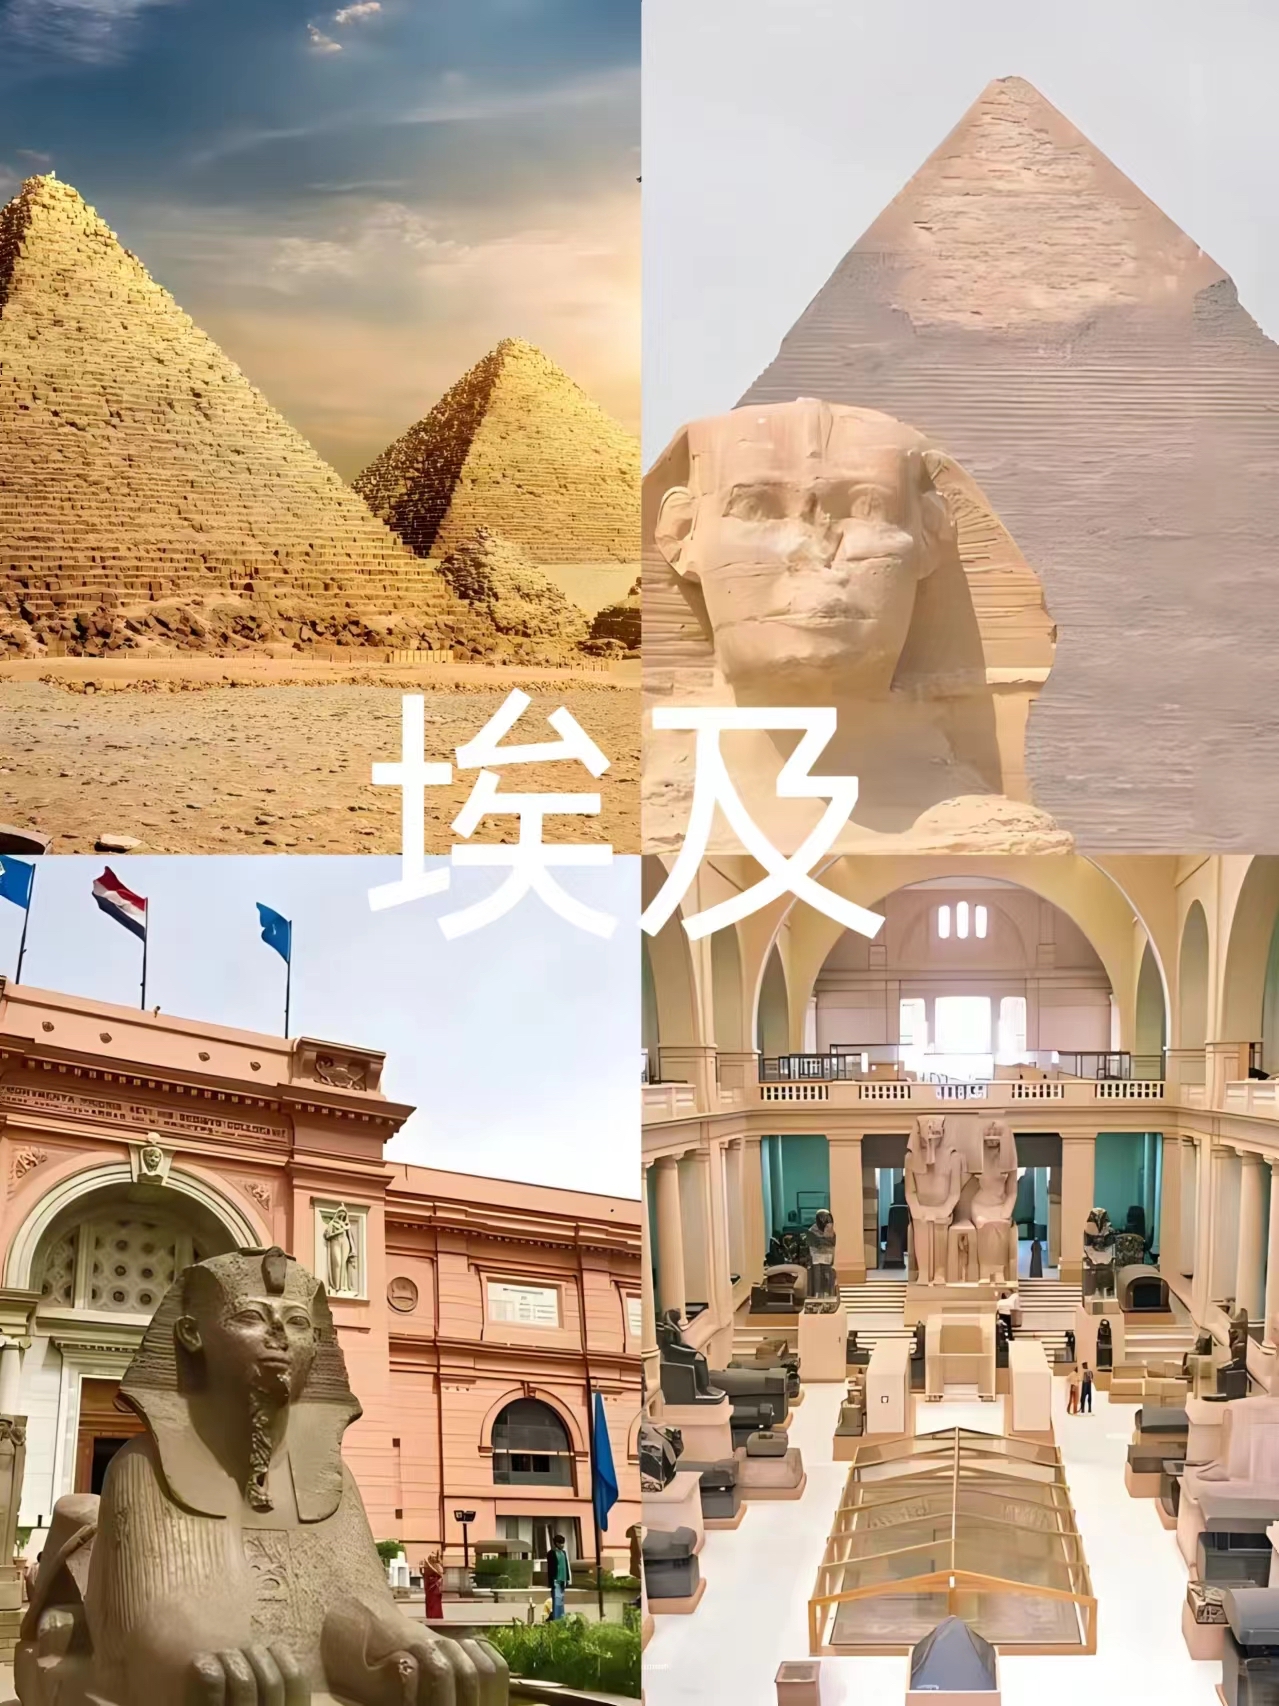 埃及古老神秘国度  D1 开罗机场接→酒店 D2 开罗→庞贝石柱→亚历山大图书馆→灯塔遗址+凯特贝城